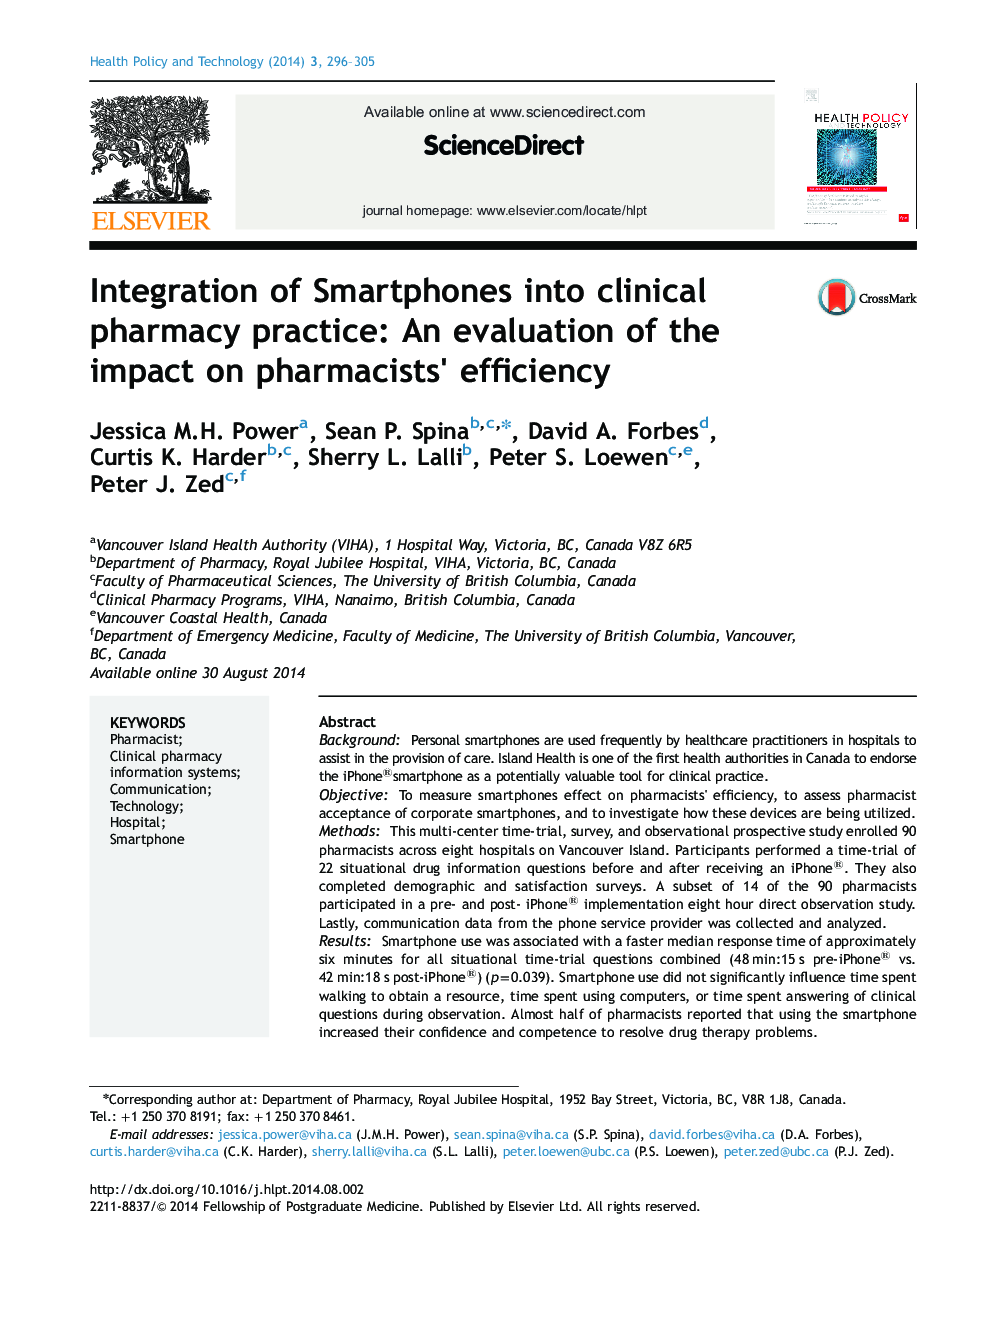 یکپارچه سازی گوشی های هوشمند به کارگاه داروخانه های بالینی: ارزیابی اثربخشی داروخانه ها 